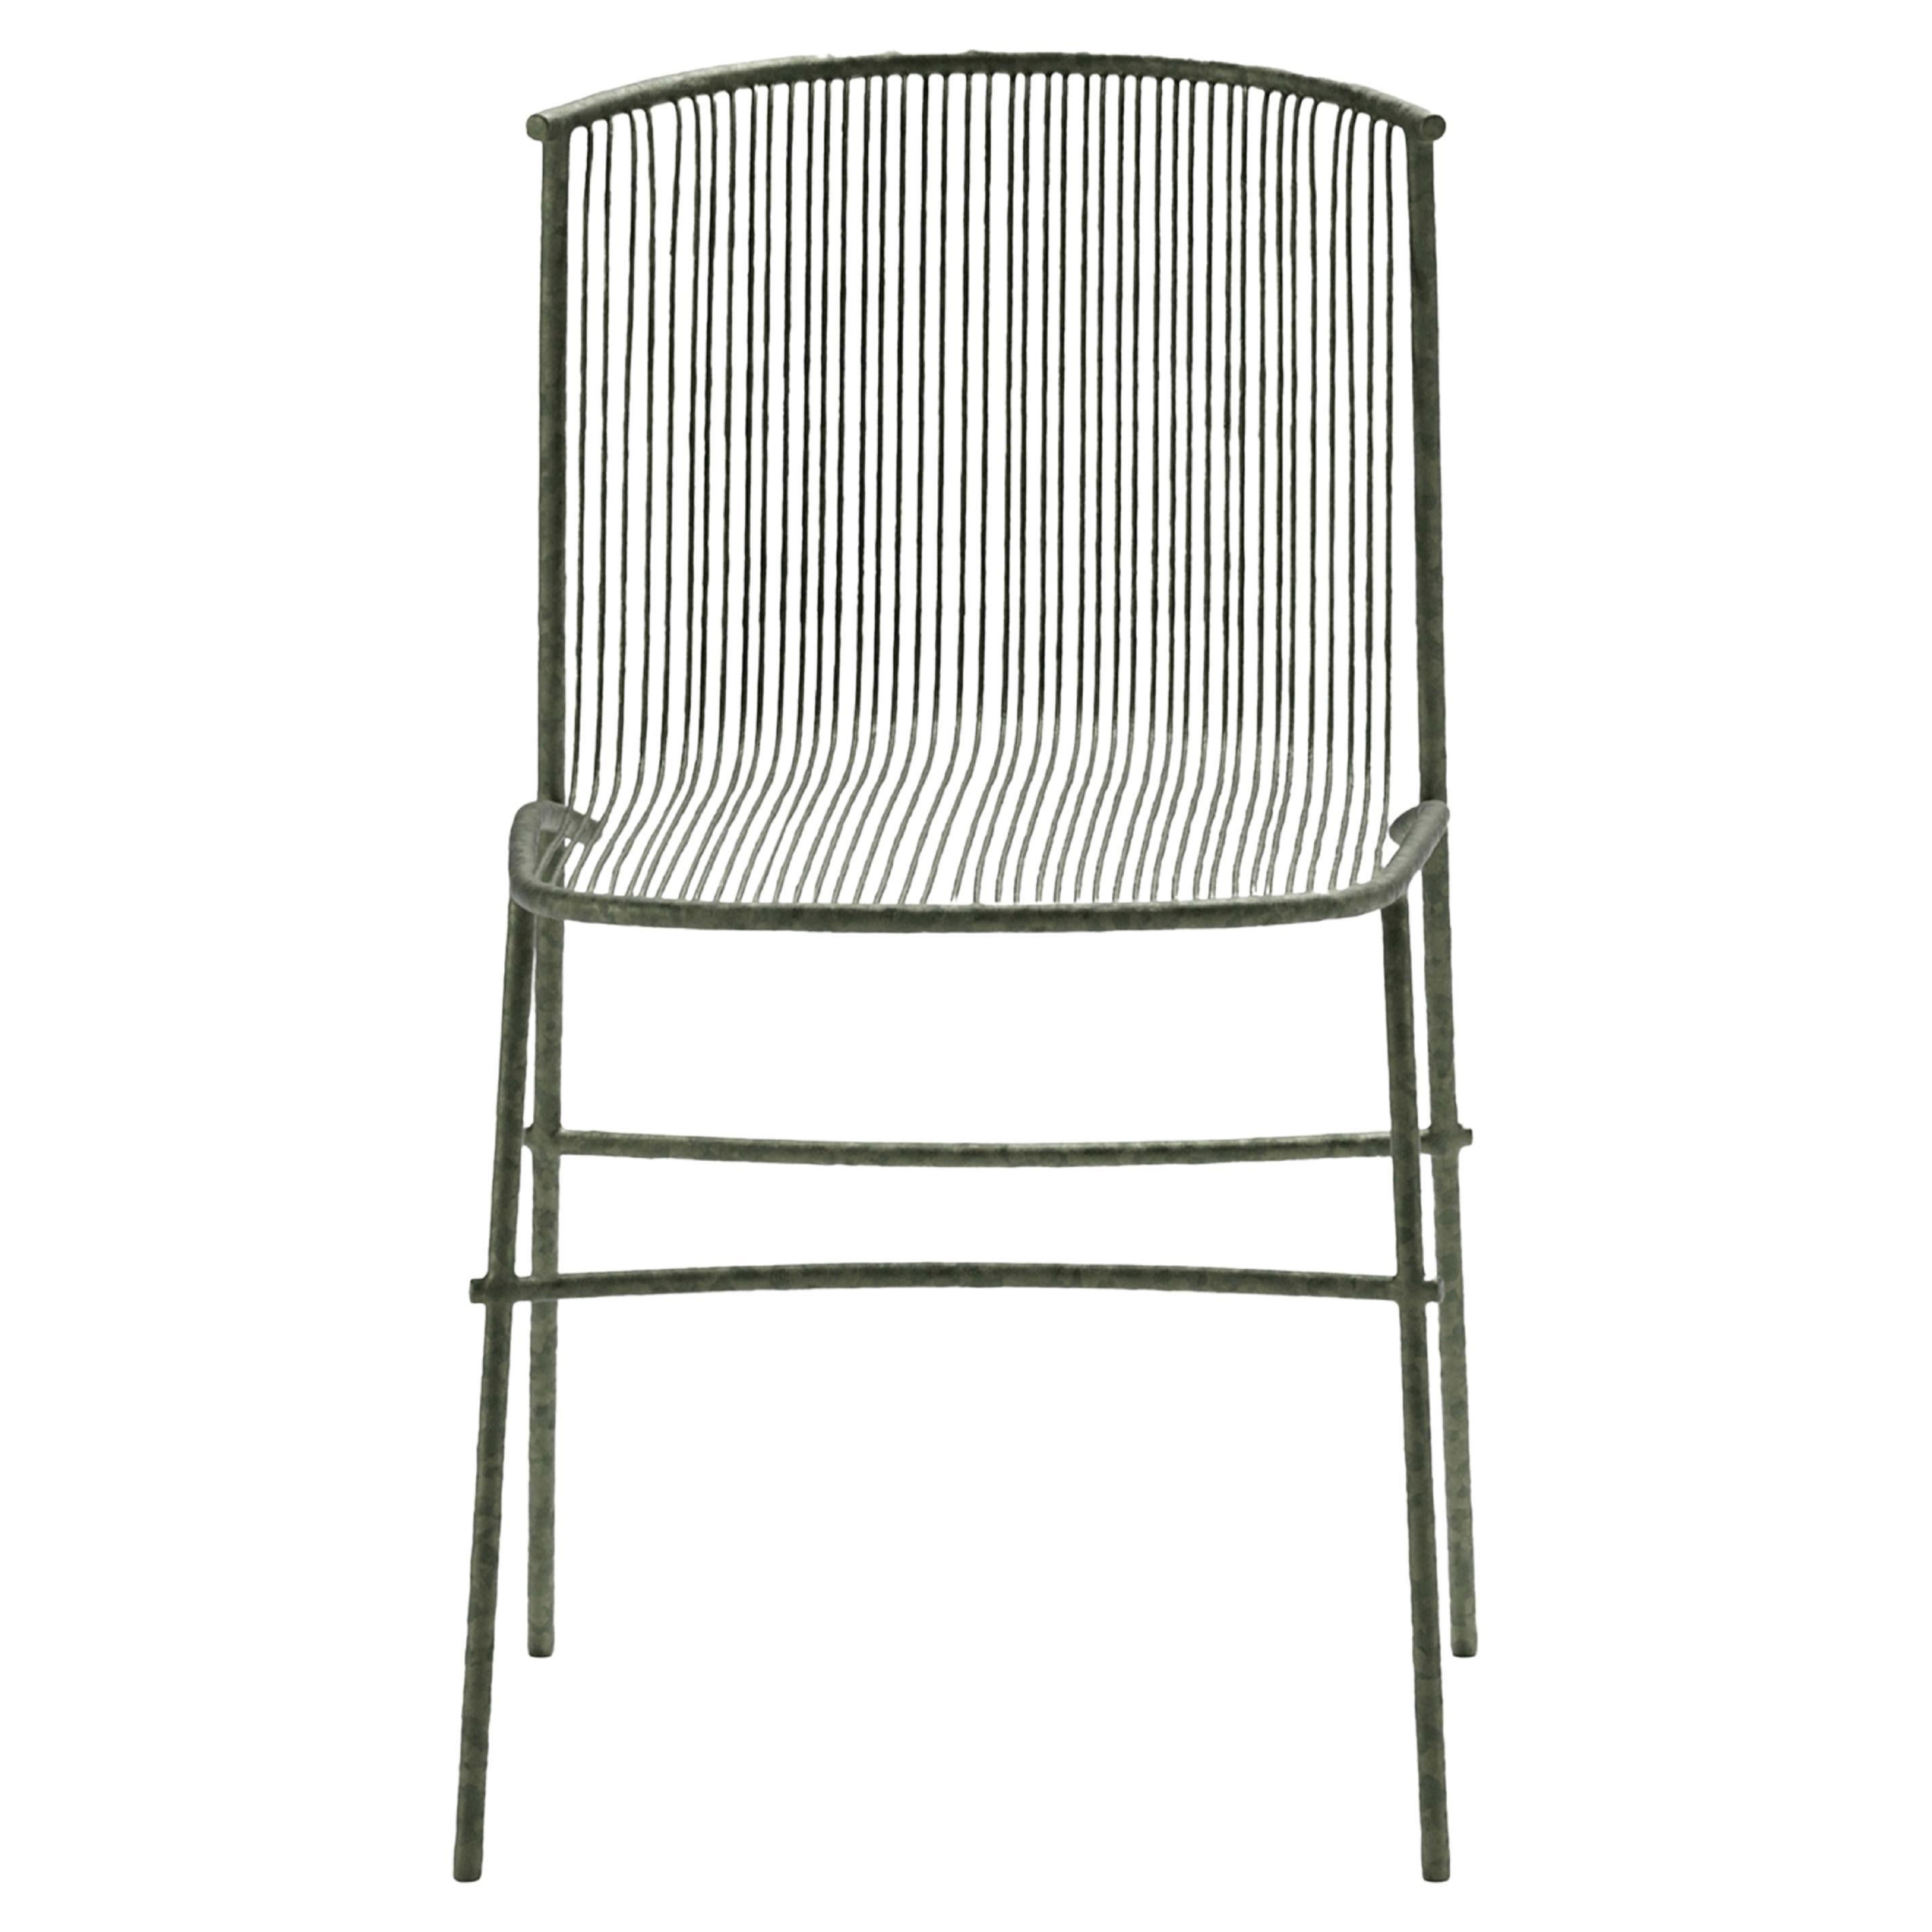 Bambusae Chair by Zanellato/Bortotto